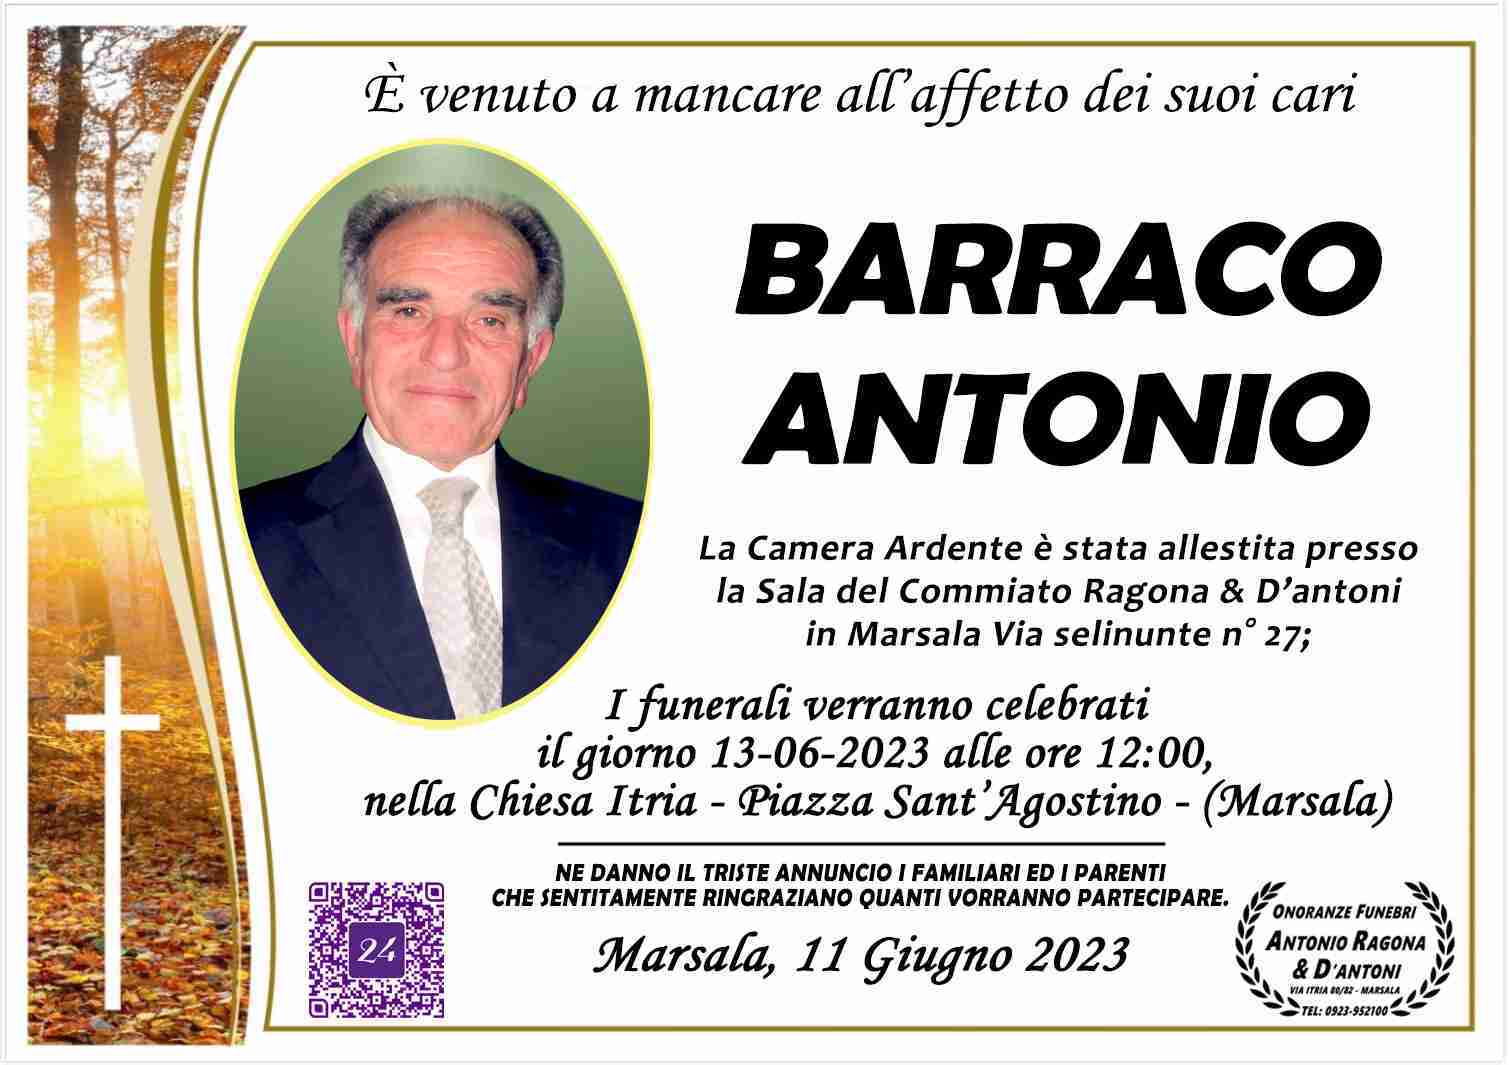 Antonio Barraco